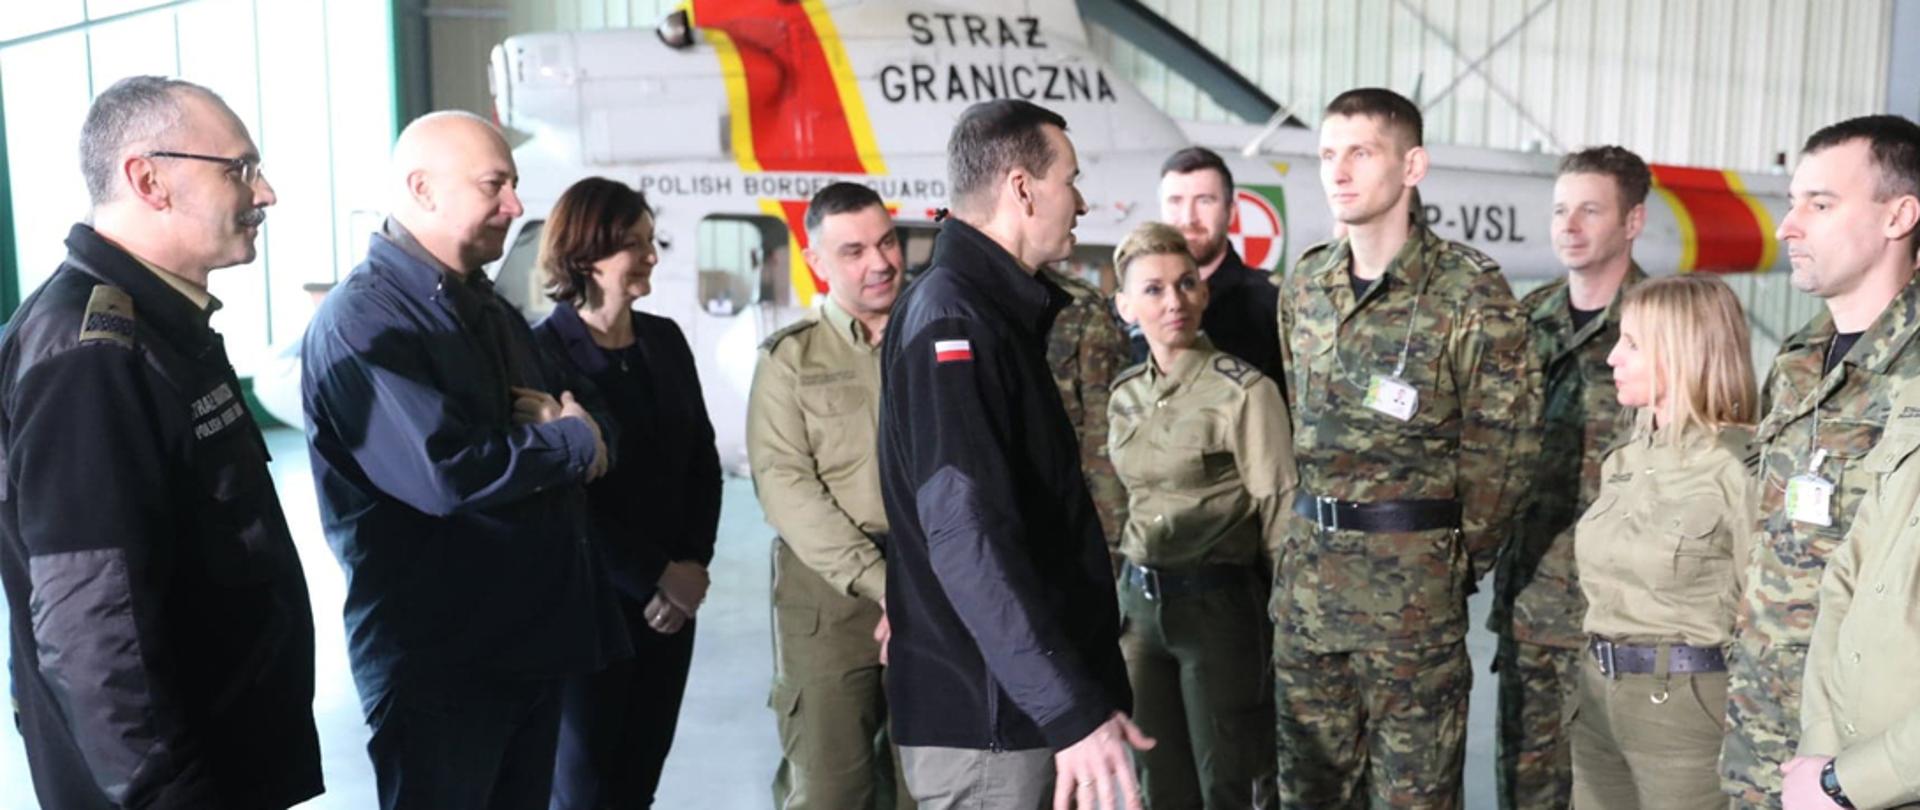 Premier Mateusza Morawiecki i minister Joachim Brudziński podczas spotkania z funkcjonariuszami Straży Granicznej